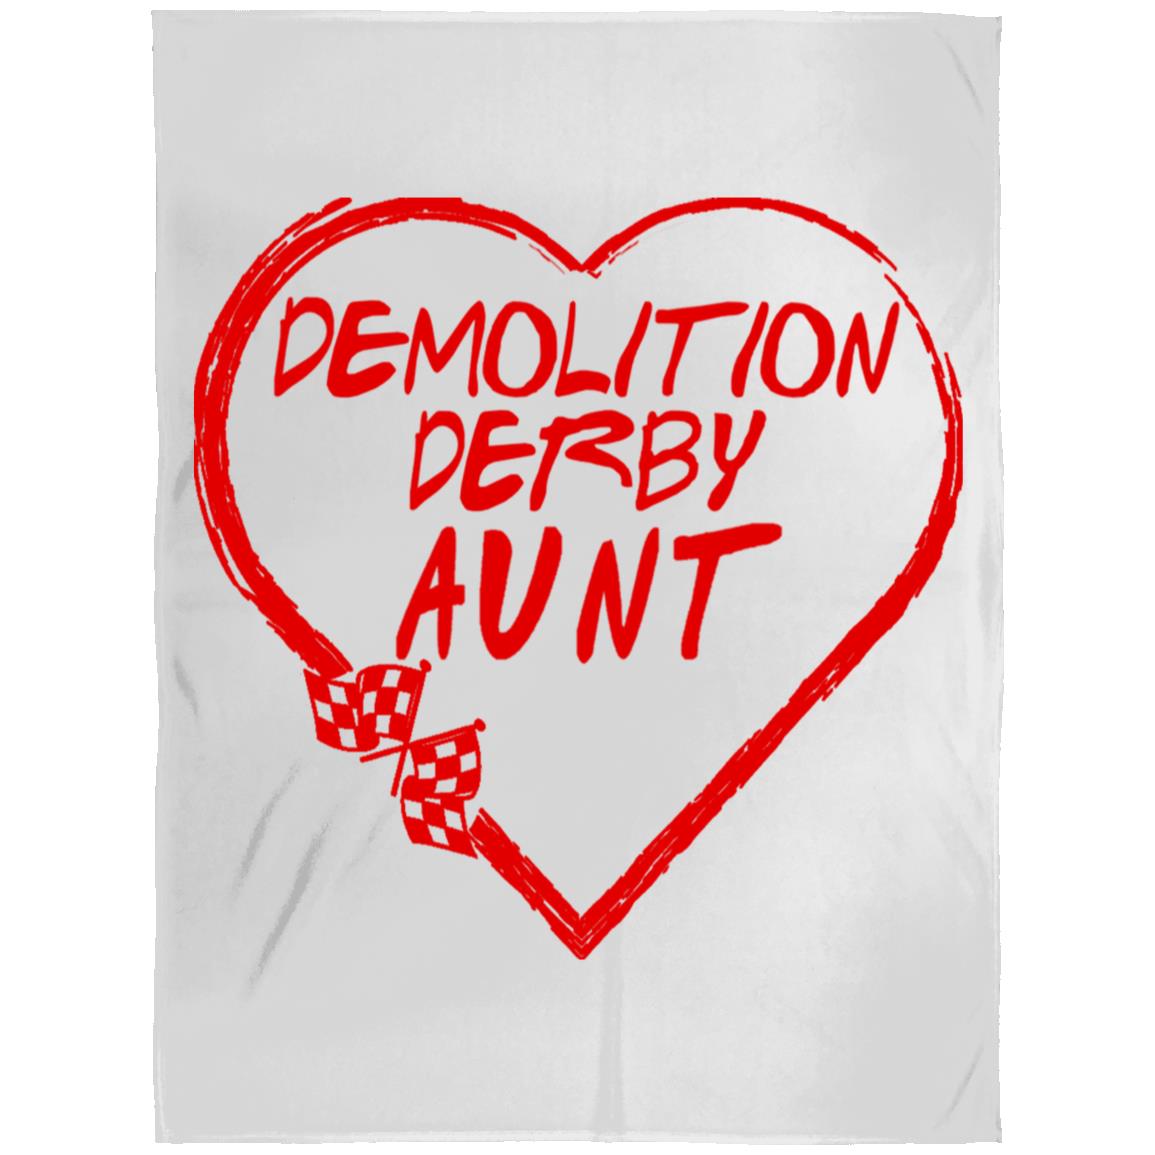 Demolition Derby Aunt Heart Arctic Fleece Blanket 60x80